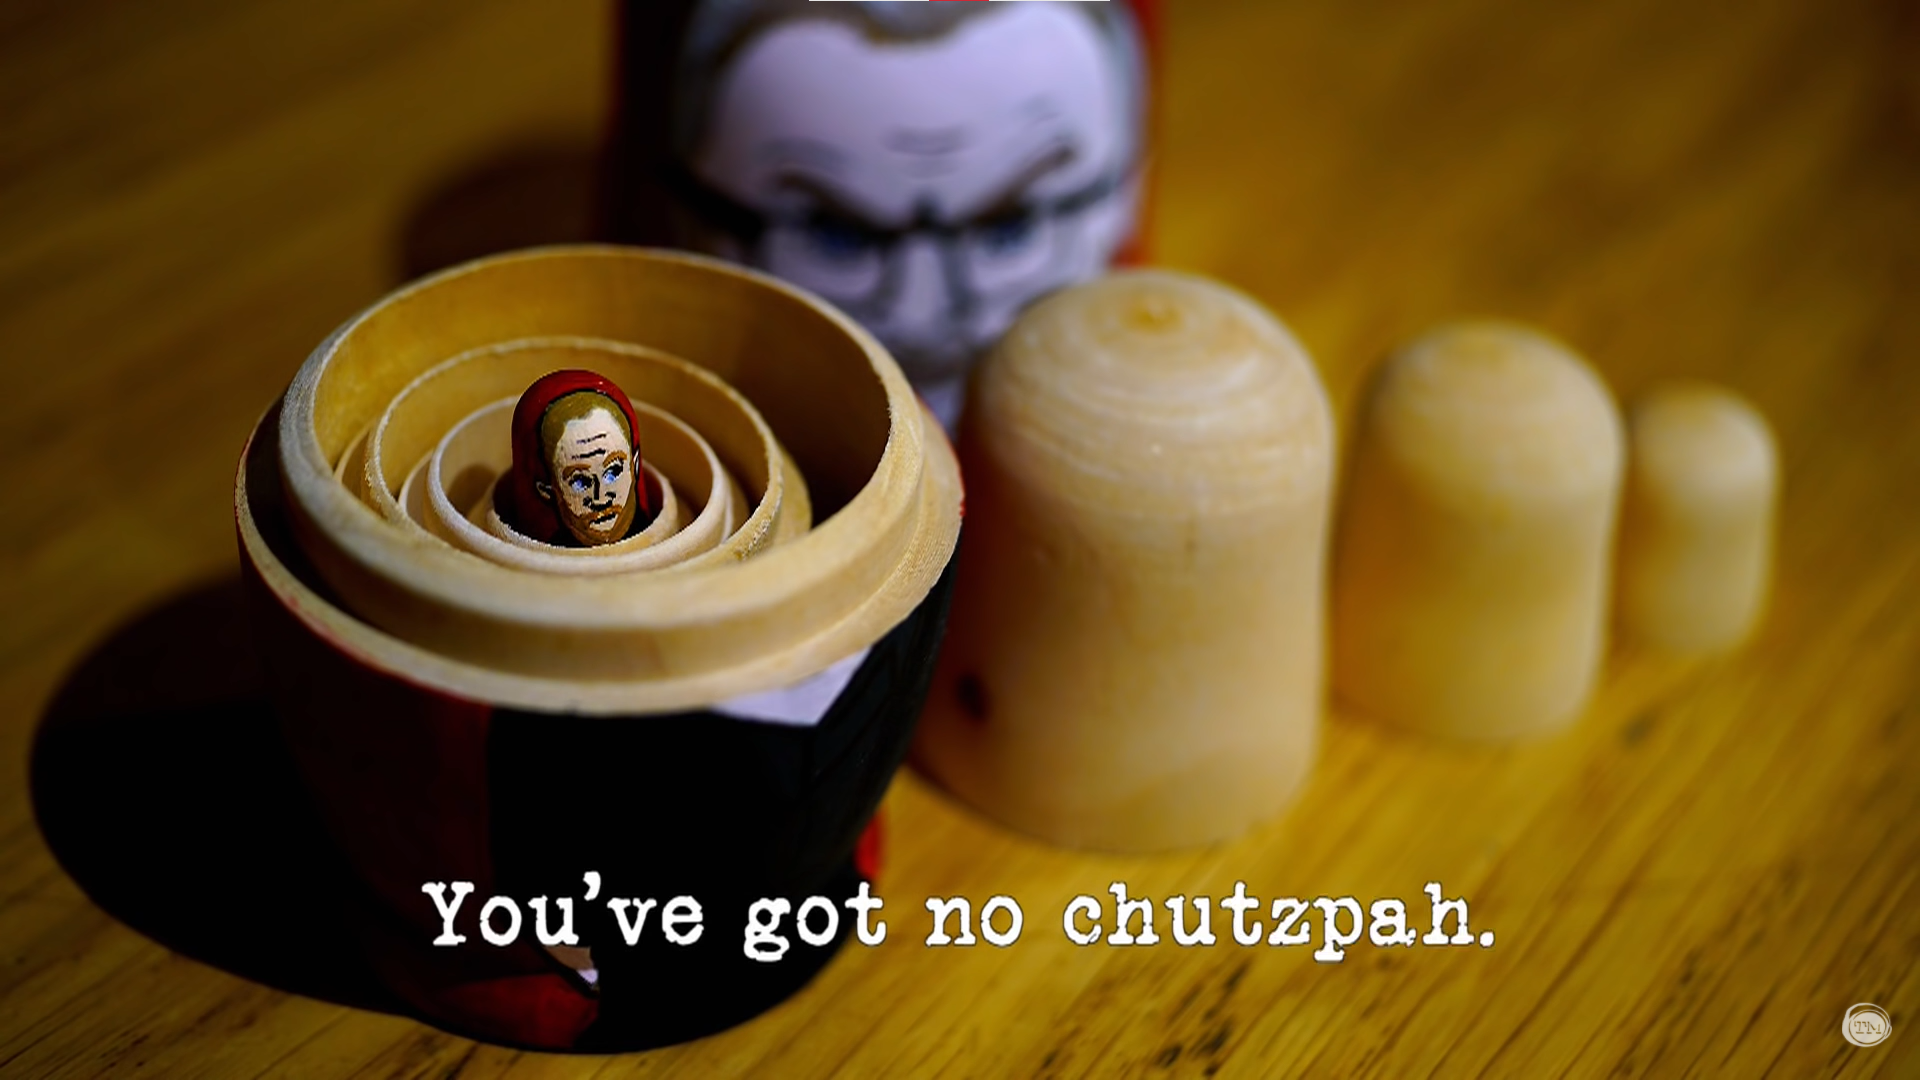 Chutzpah (web series) - Wikipedia